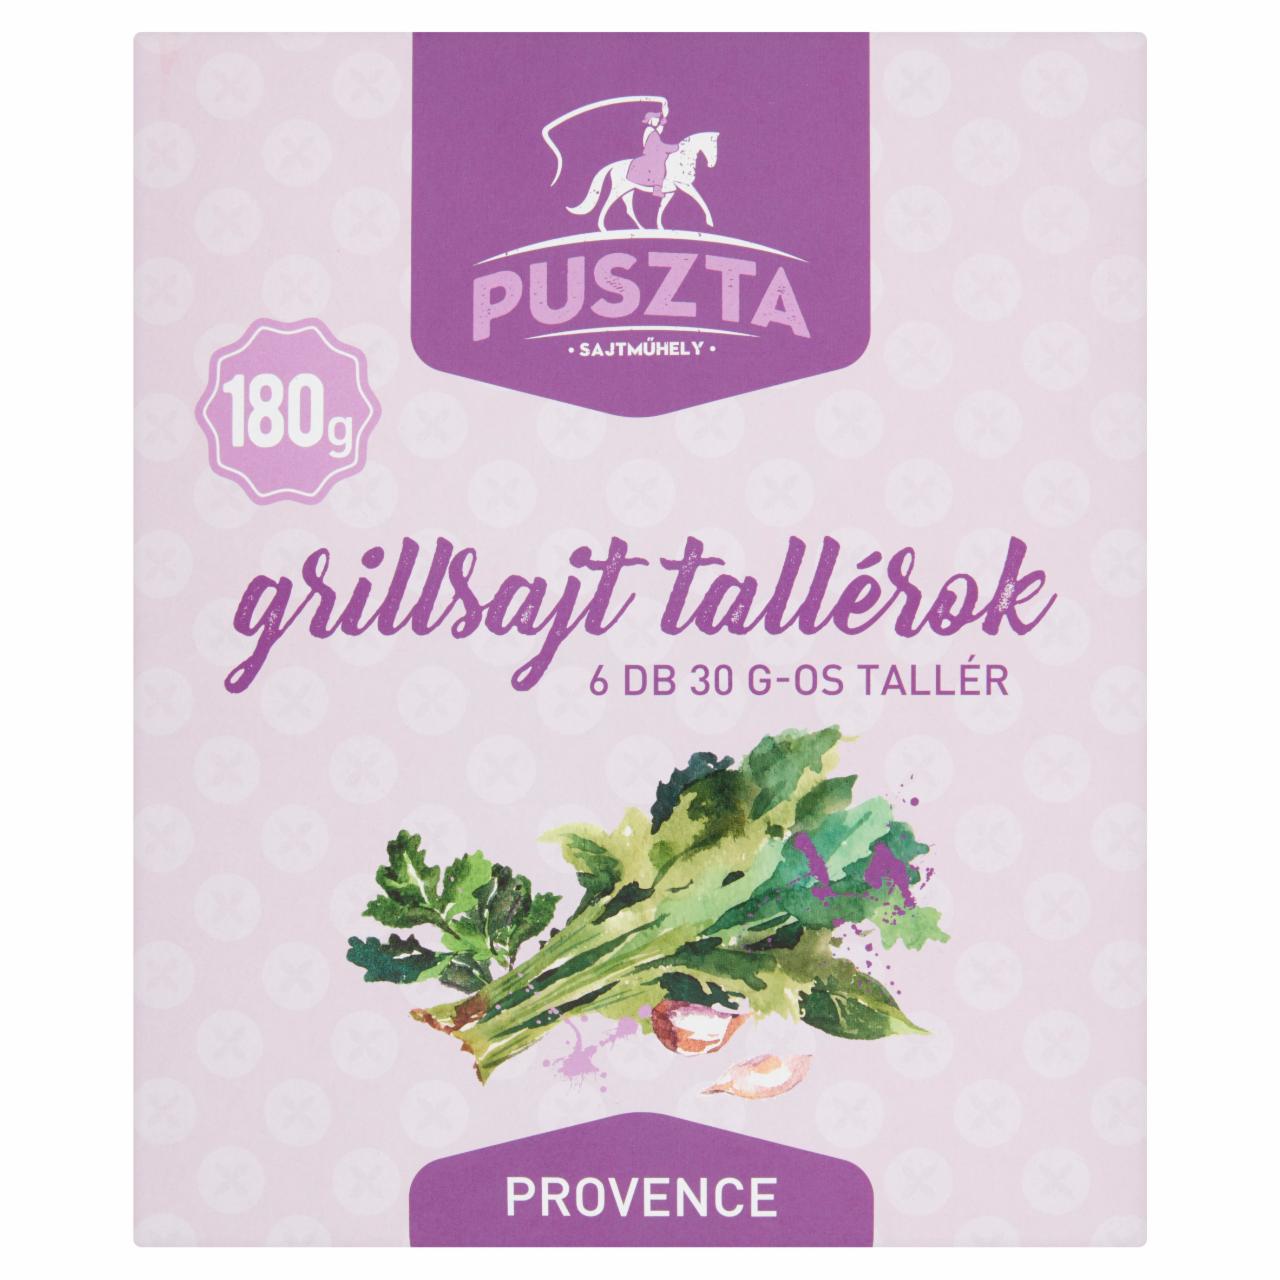 Képek - Puszta provence-i fűszerekkel ízesített grillsajt tallérok 6 db 180 g